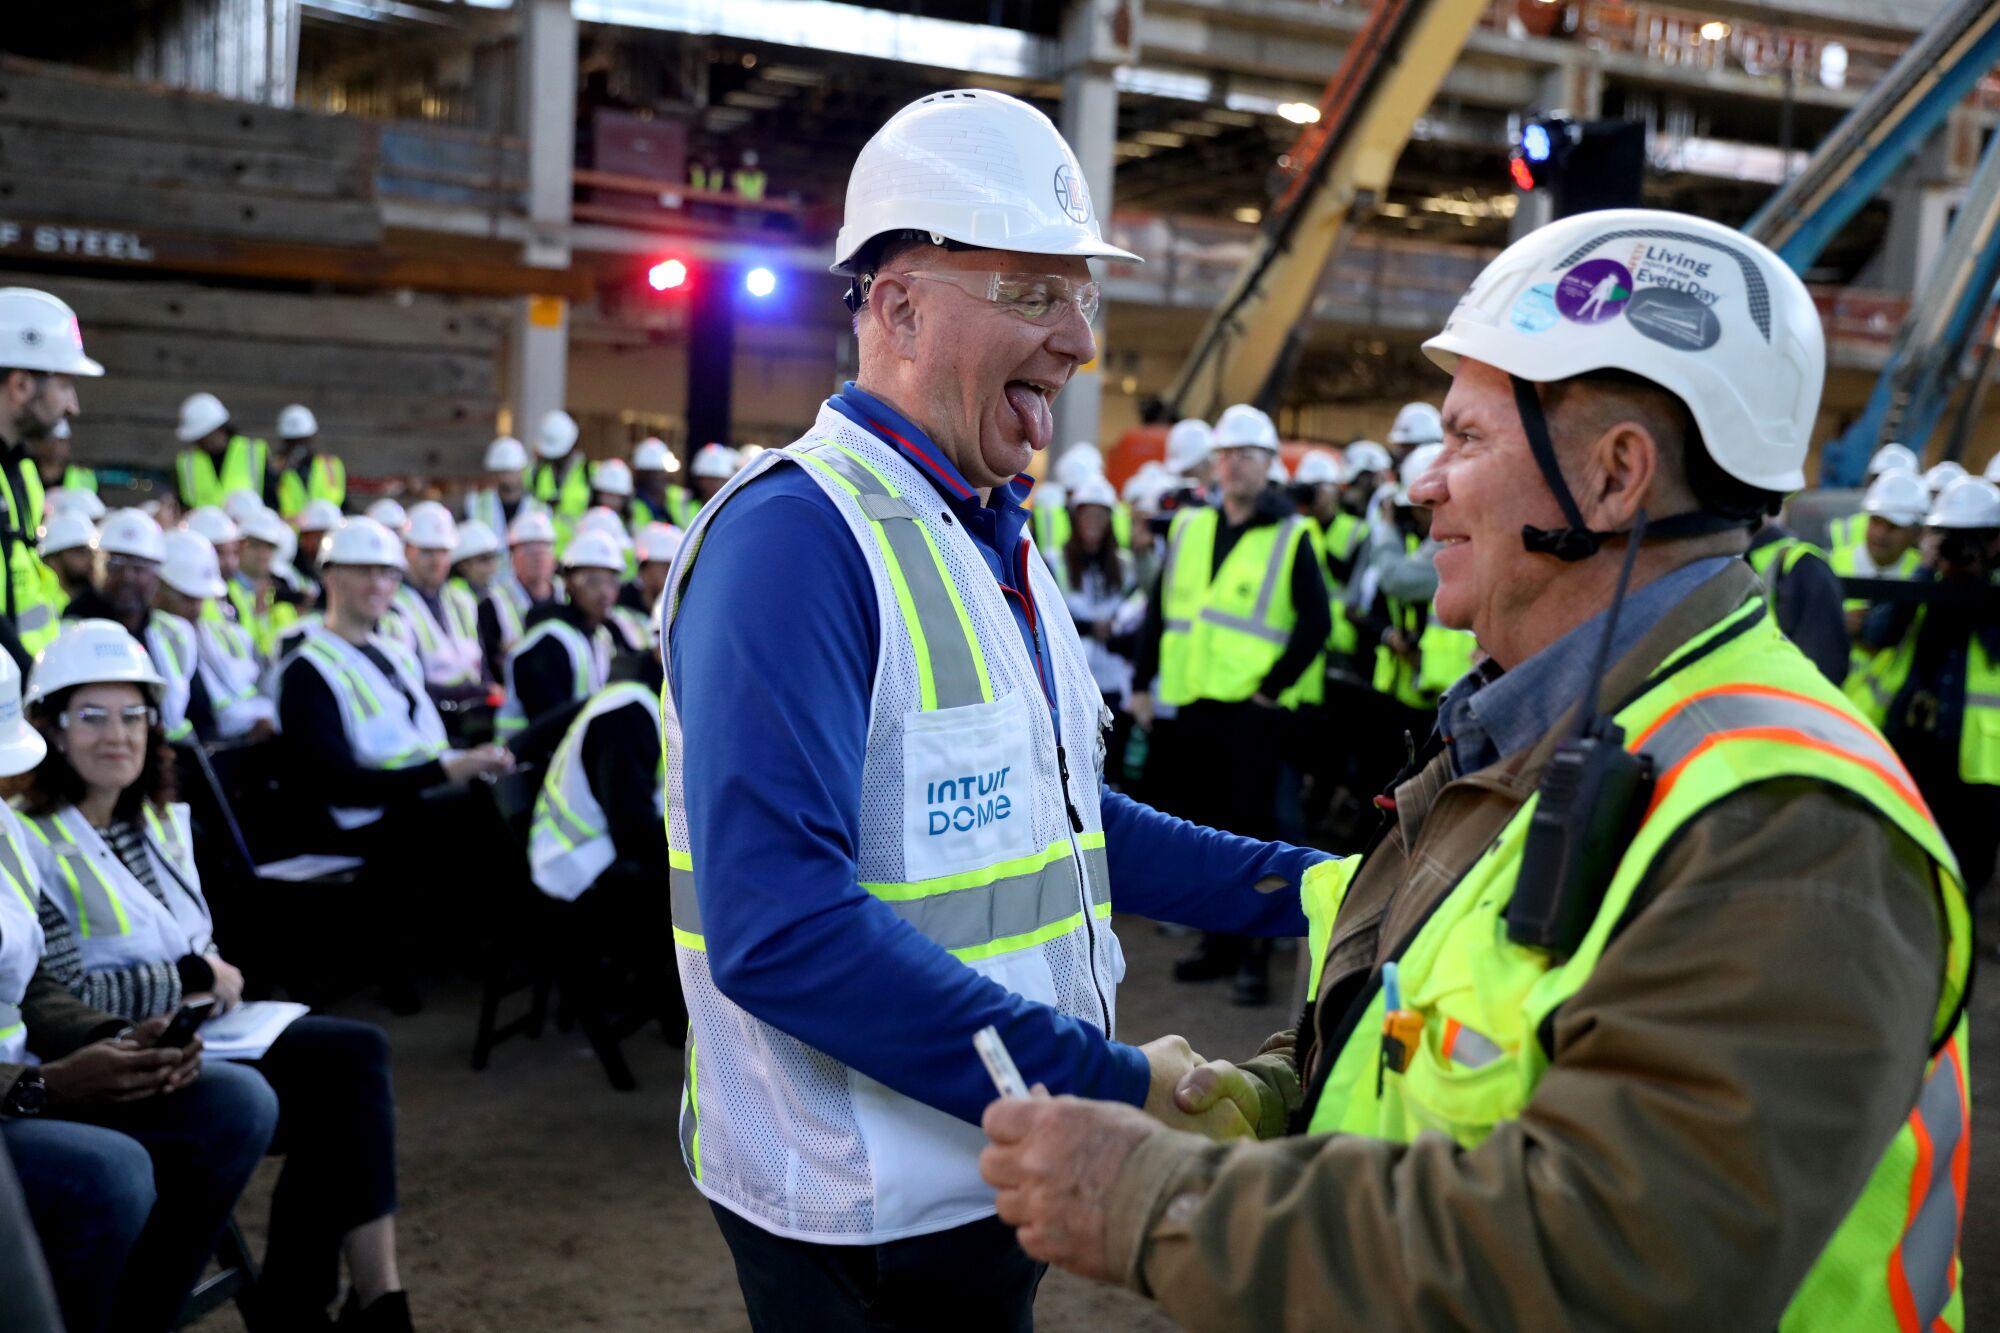 Clippers'ın sahibi Steve Ballmer, solda, Intuit Dome'da bir inşaat işçisiyle el sıkışıyor.